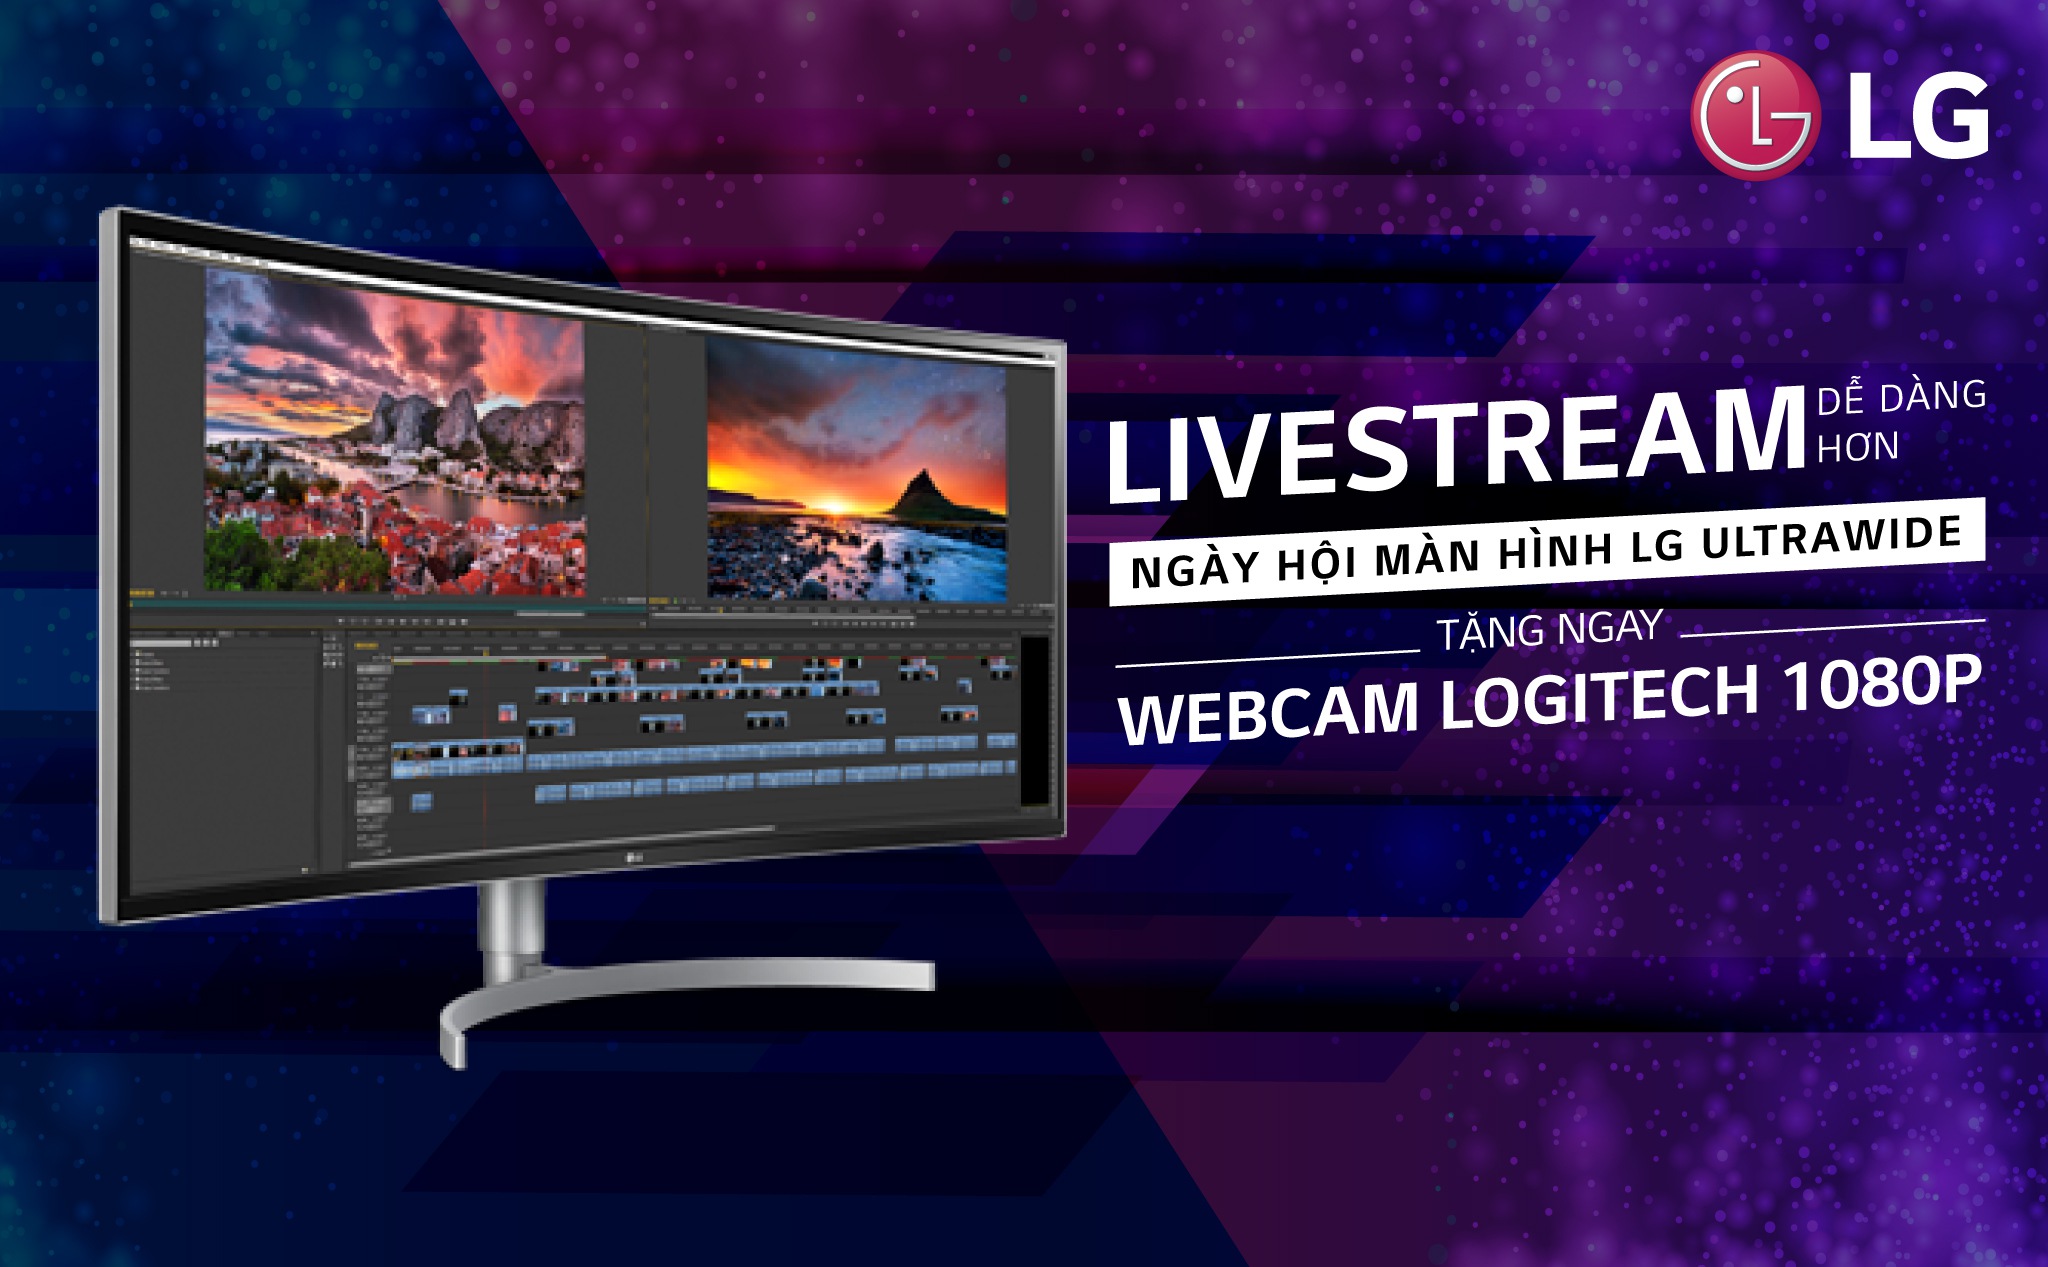 [QC] “Ngày hội màn hình LG Ultrawide” – Nhận Webcam Logitech tại Tiki.vn trước ngày 10/6/2018